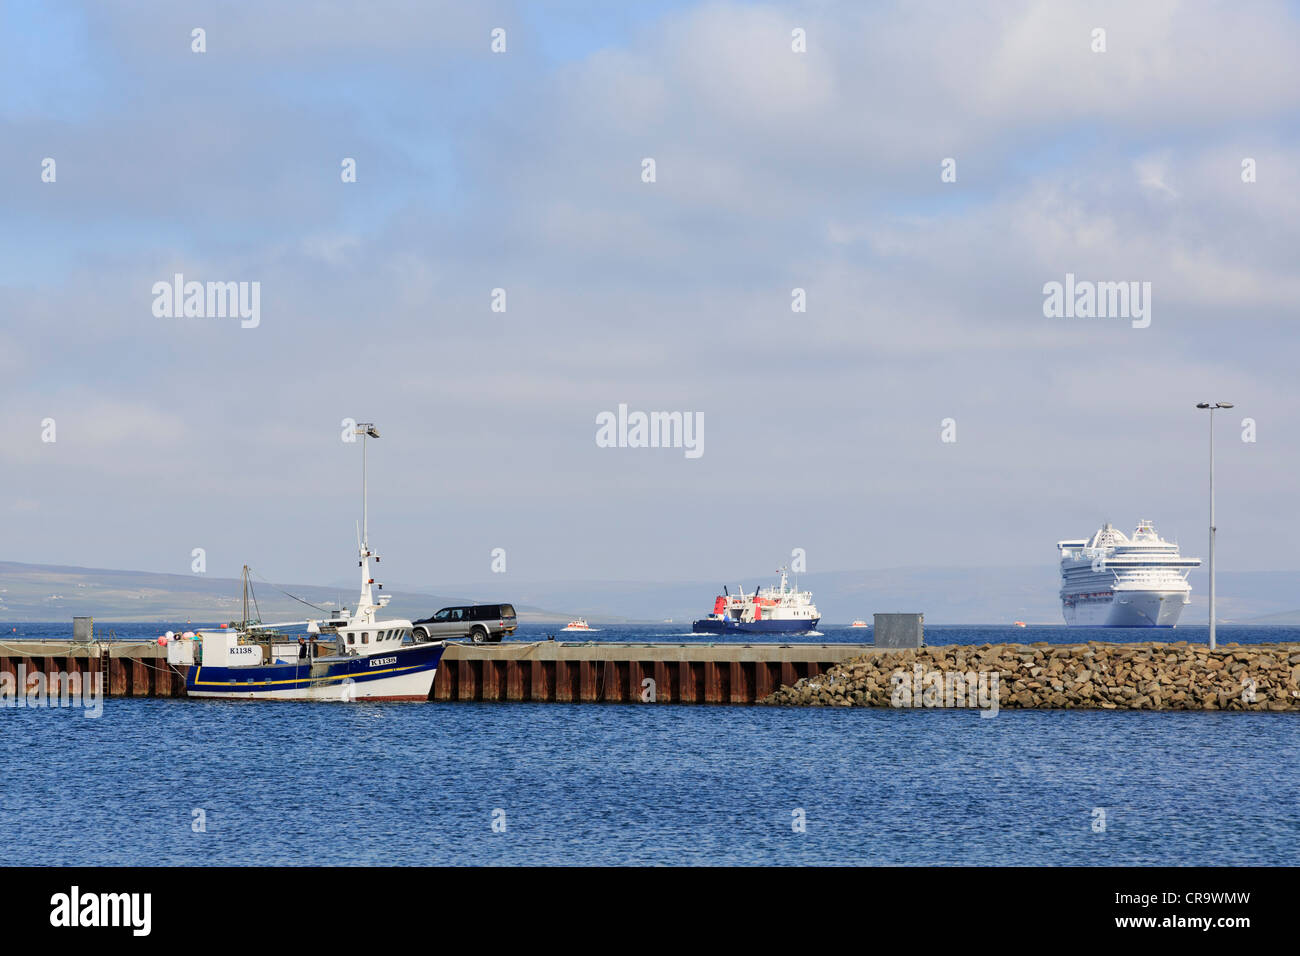 Großes Kreuzfahrtschiff Caribbean Princess festgemacht Außenwand Hafen während des Besuchs der Orkneys. Kirkwall, Orkney Inseln, Schottland Stockfoto